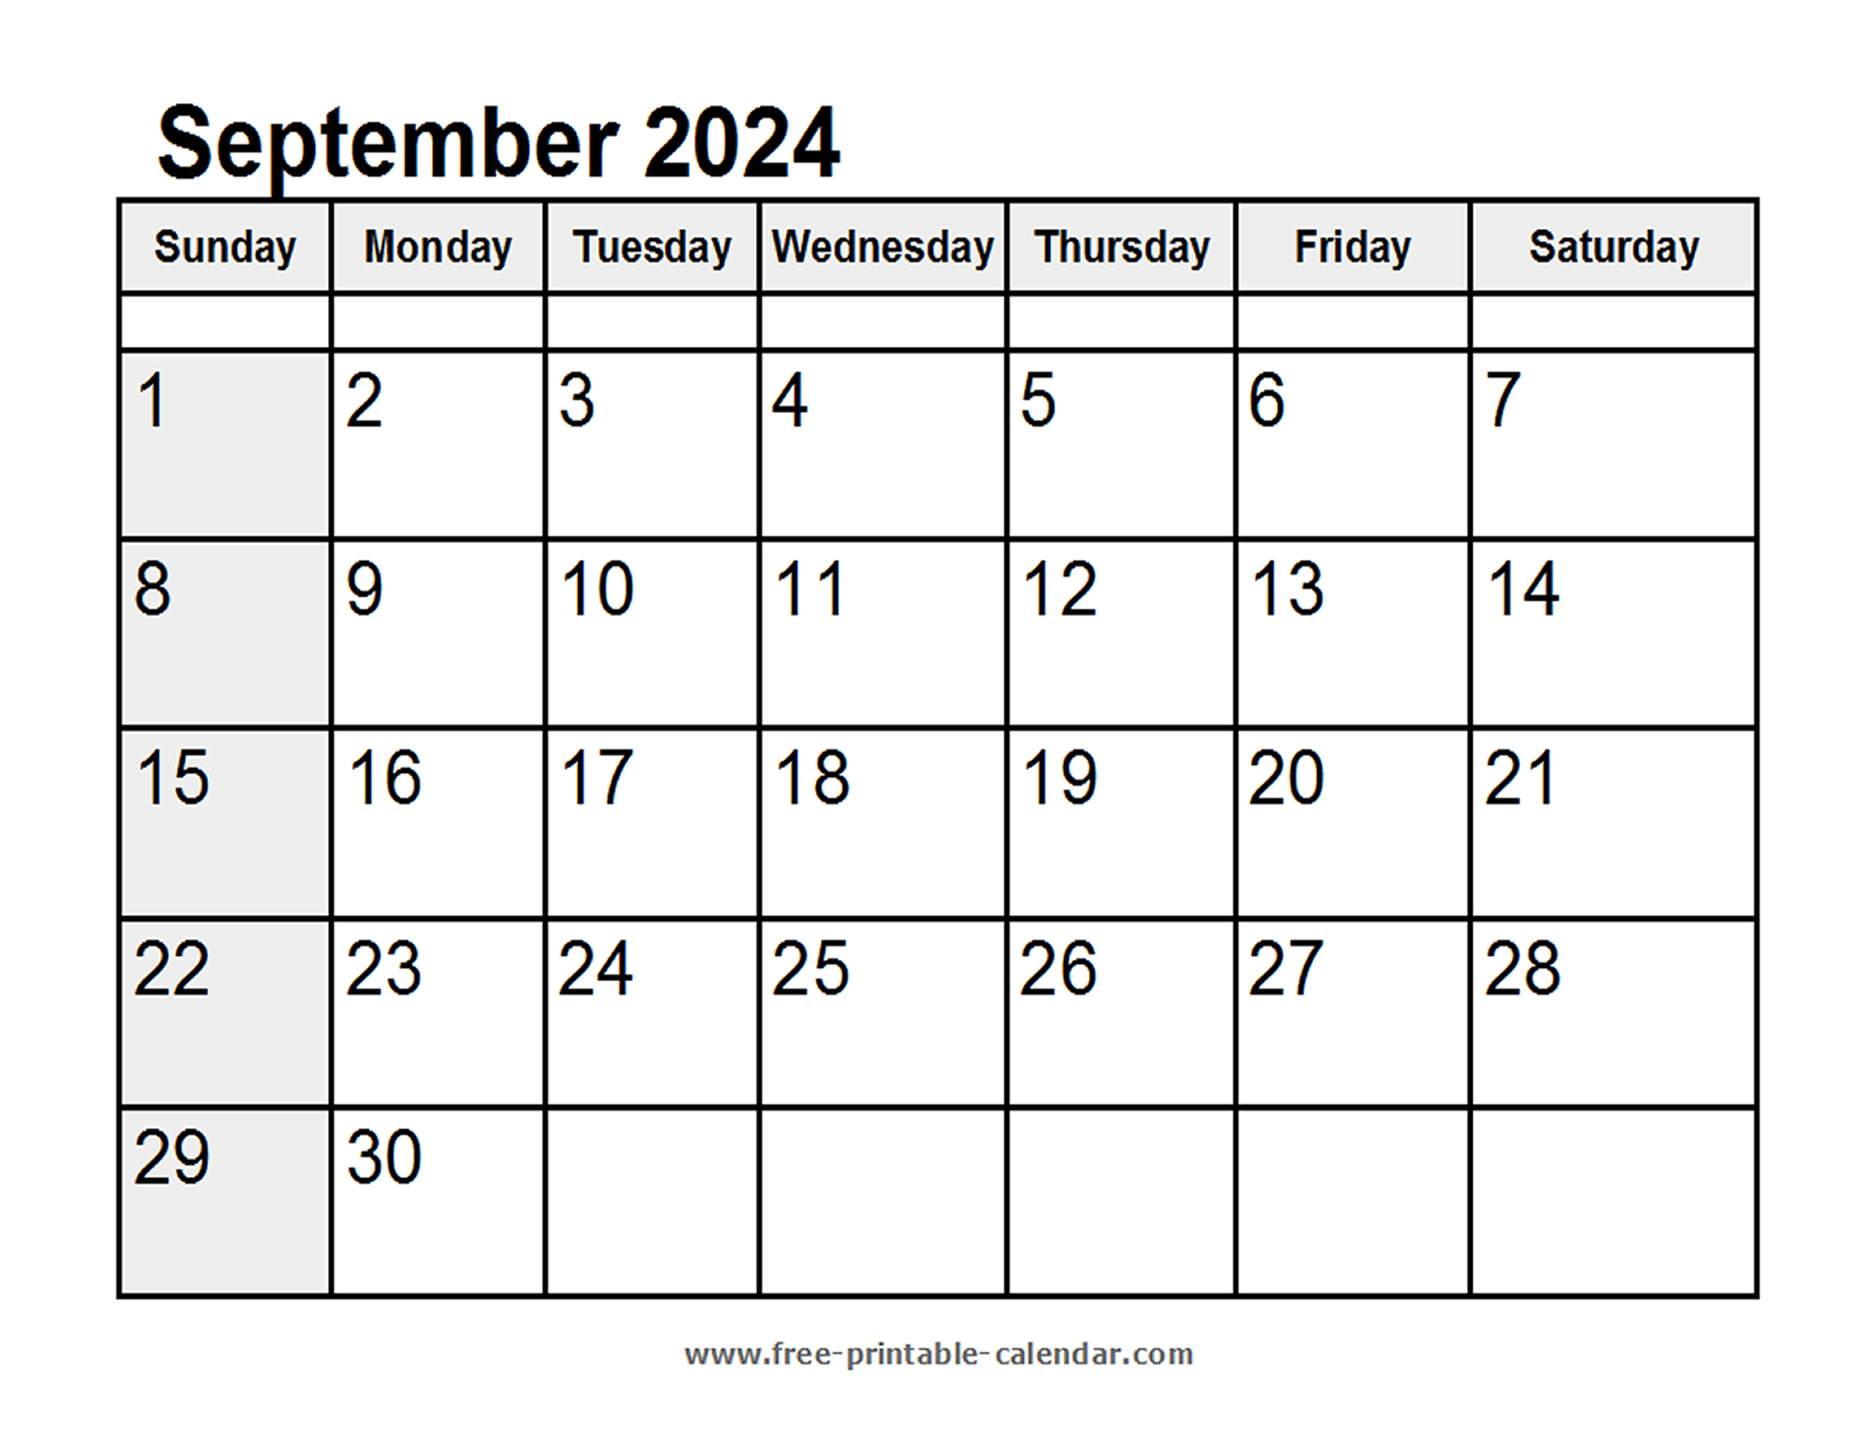 Calendar September 2024 - Free-printable-calendar.com